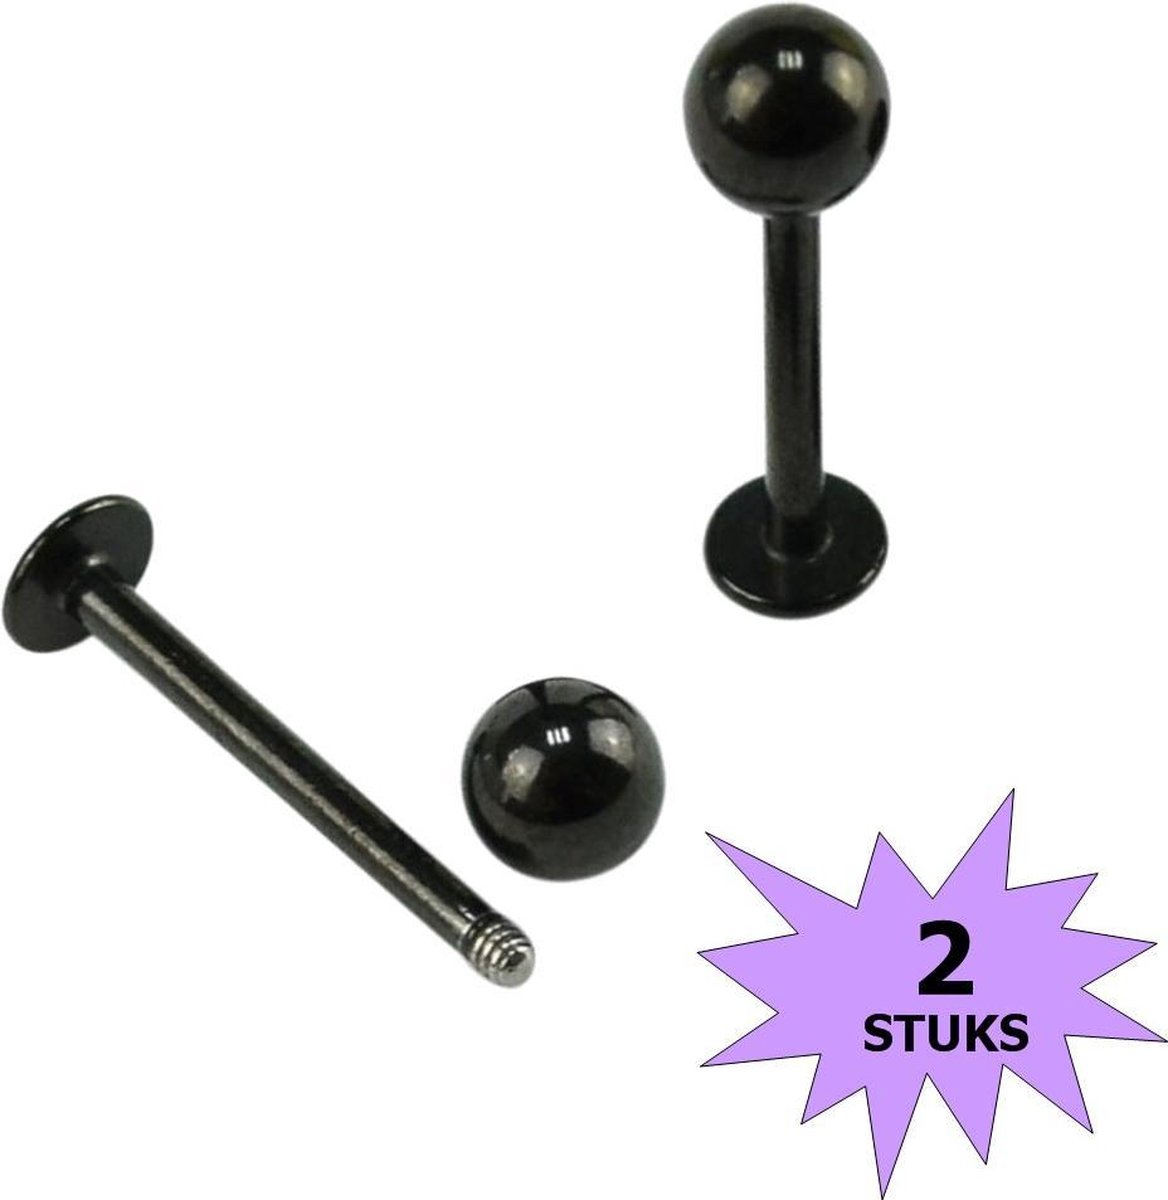 Fako Bijoux® - Labret Piercing - 4mm - Zwart - 2 Stuks - Fako Bijoux®